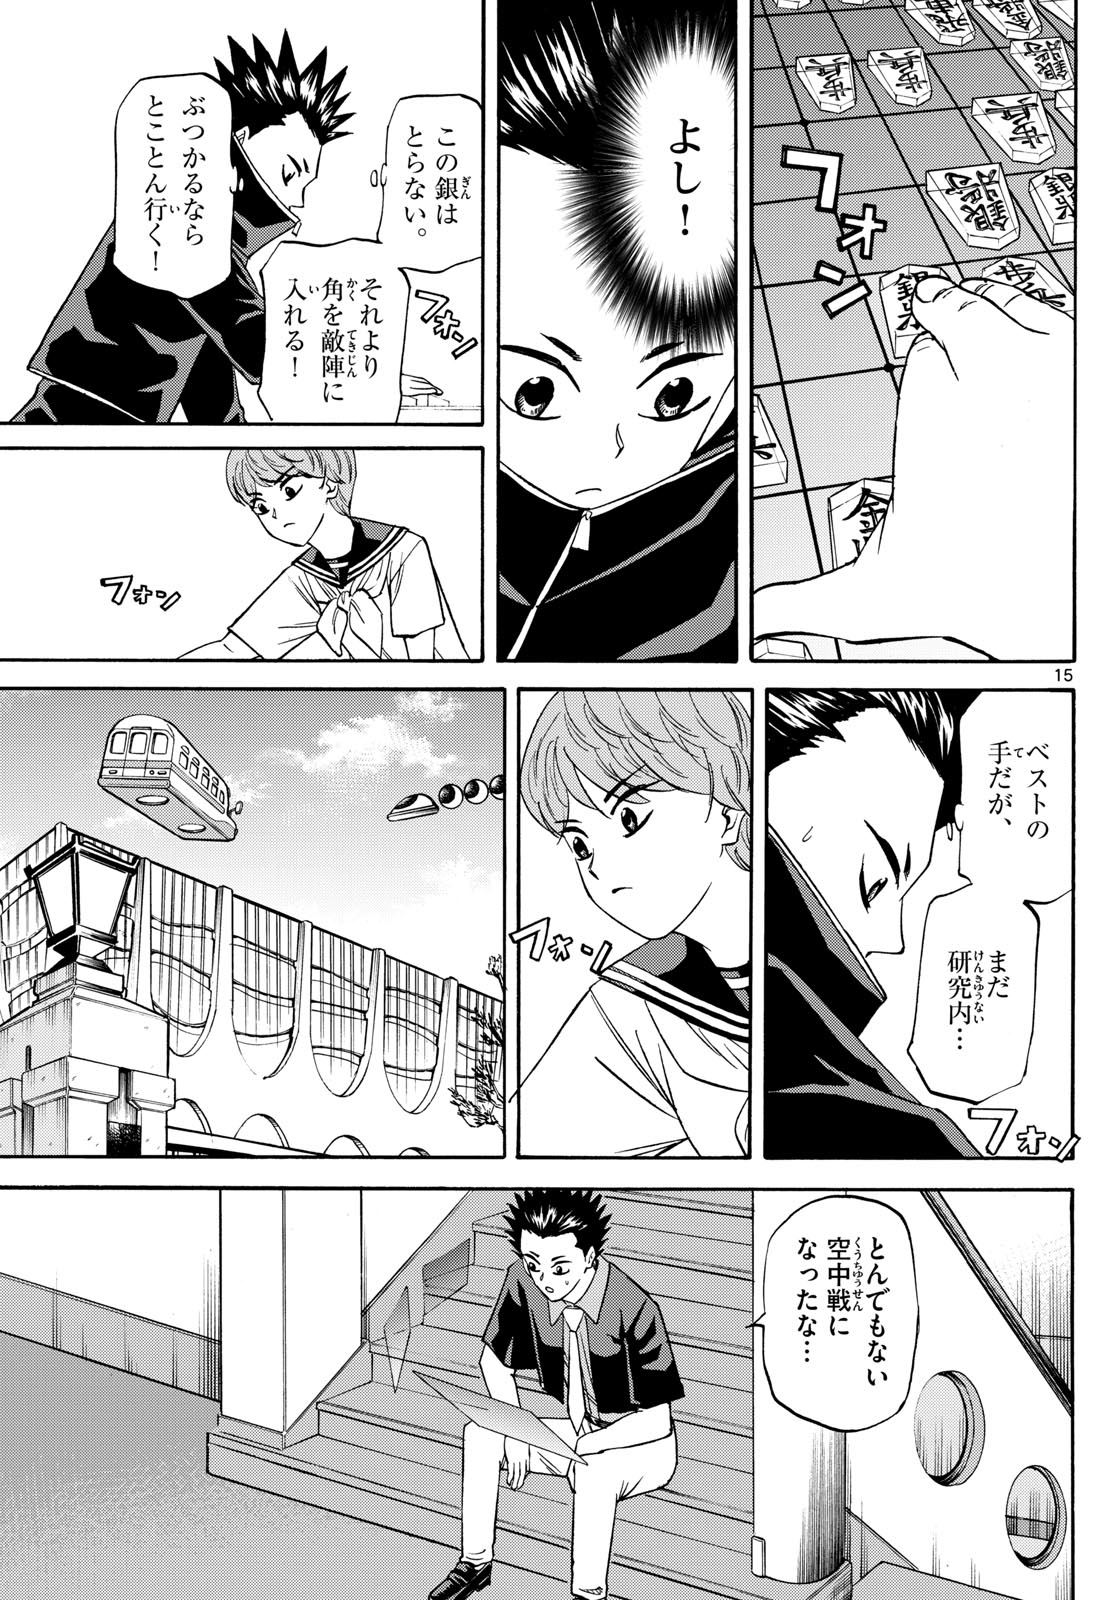 Tatsu to Ichigo - Chapter 191 - Page 15